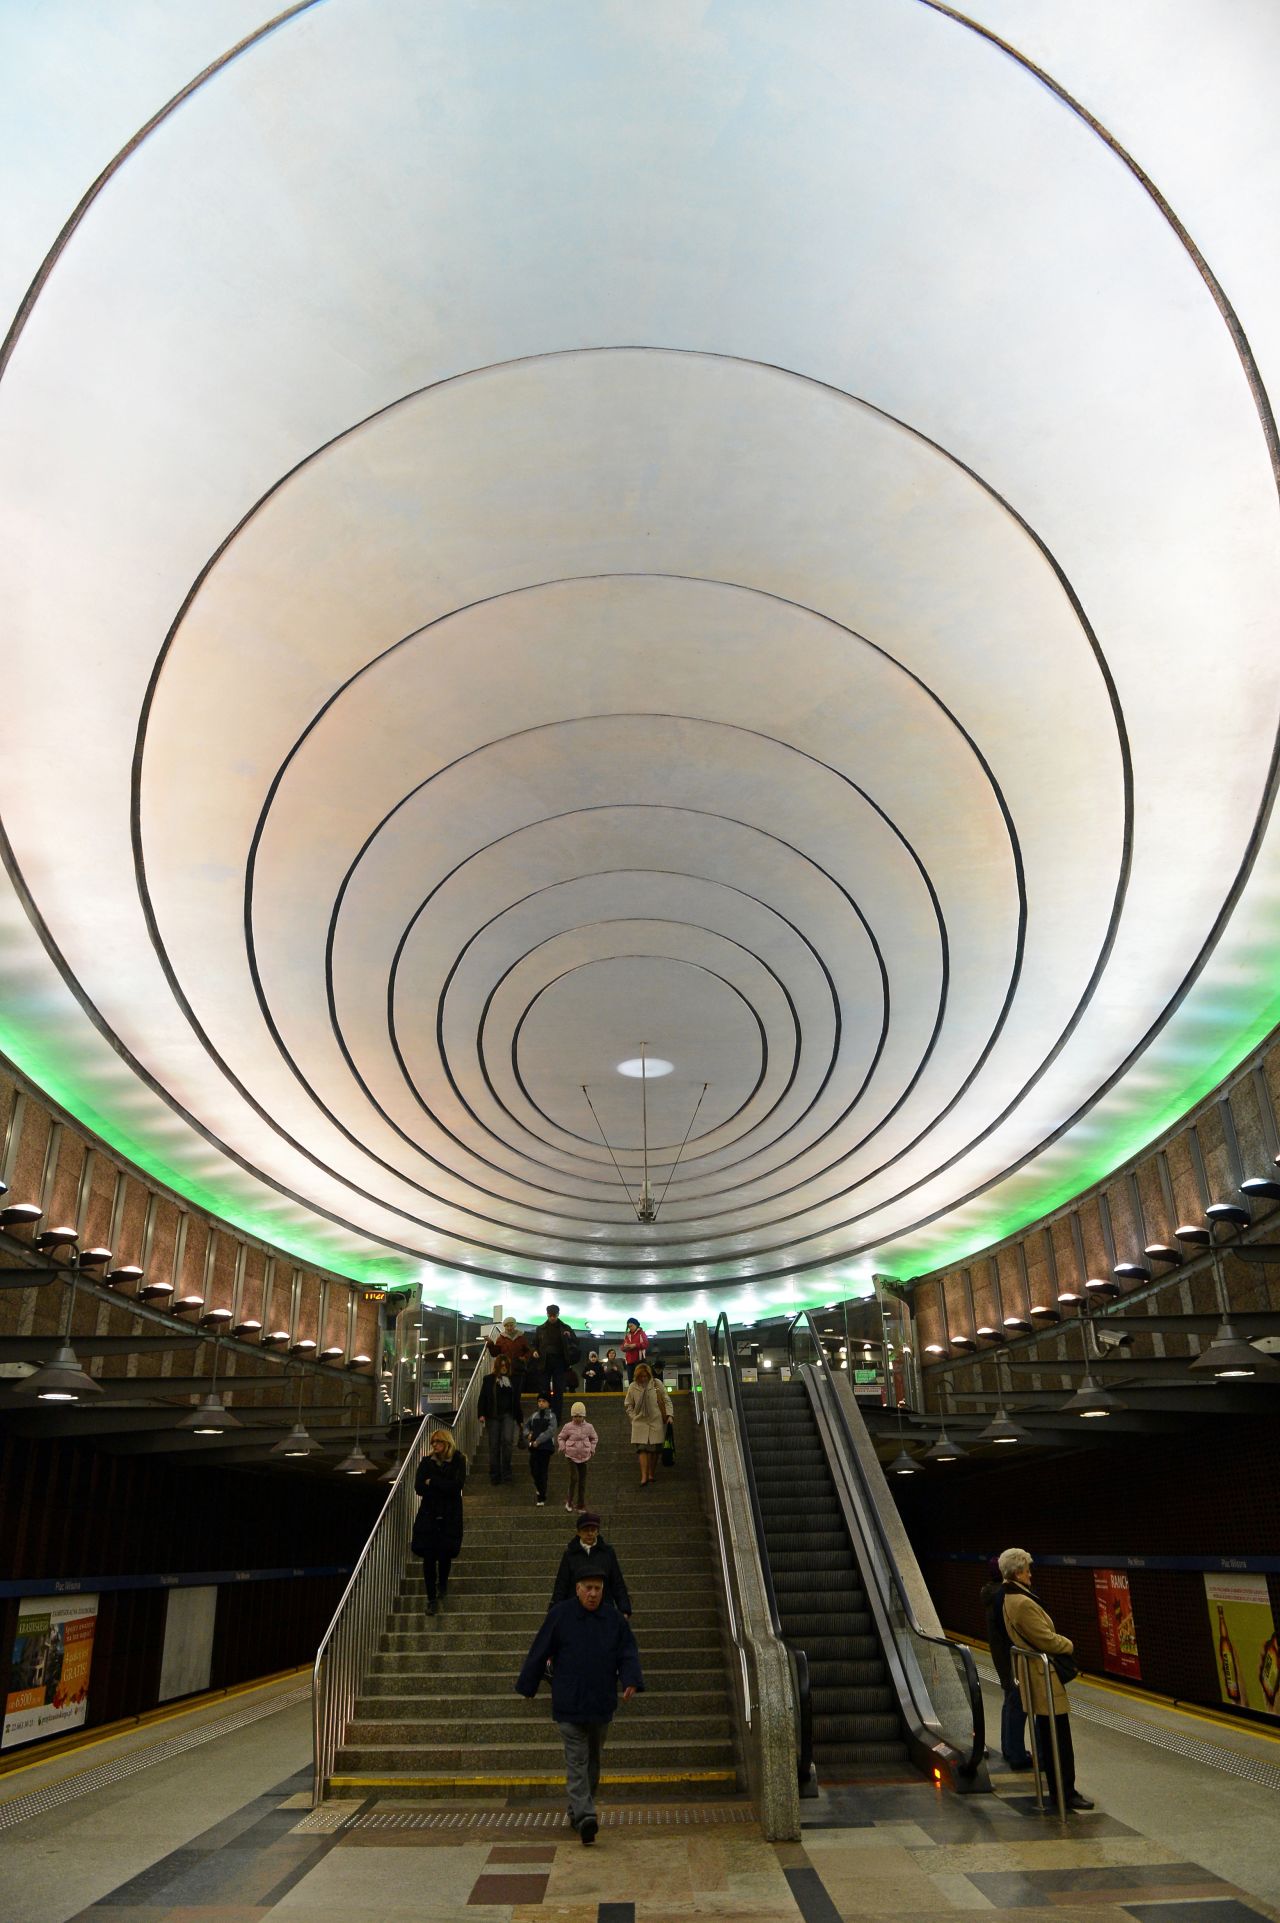 Esta parada subterránea del metro de 2005 en Varsovia, Polonia, nombrada en honor al presidente de Estados Unidos Woodrow Wilson, ganó un premio de diseño de metro, posiblemente de los ovnis que la visitan.